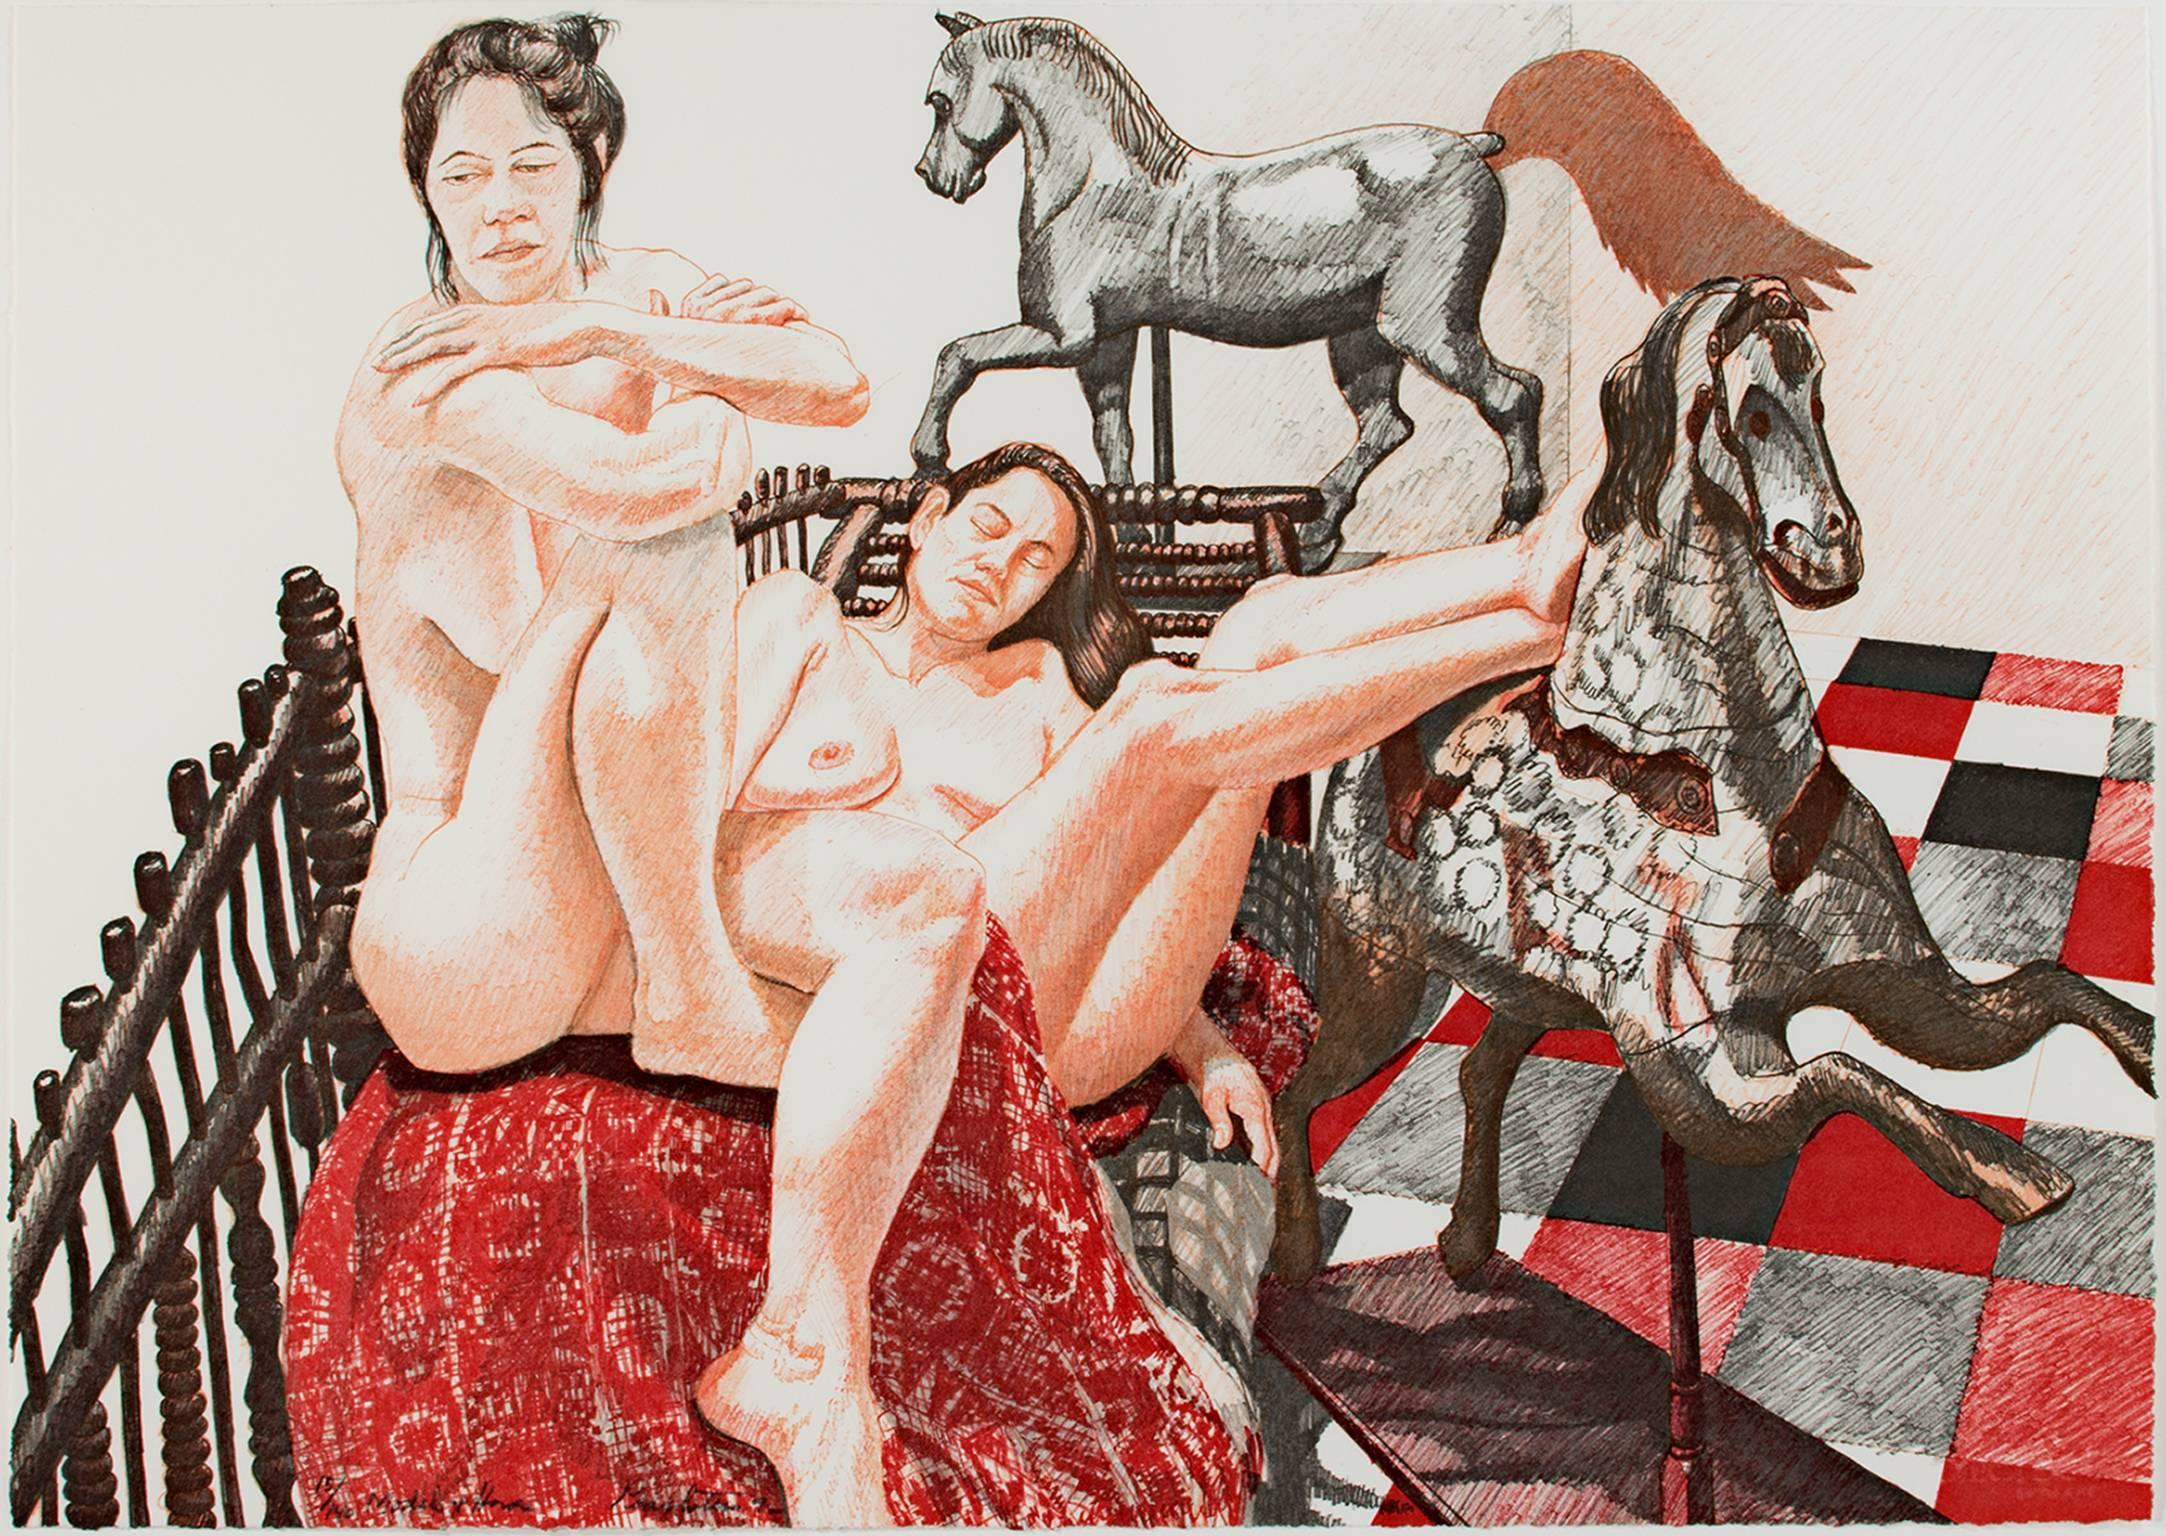 "Models & Horses" est une lithographie originale en couleurs de Philip Pearlstein. L'artiste a signé l'œuvre en bas à gauche et l'édition est de 15/140. Cette pièce présente deux modèles féminins nus se prélassant avec des accessoires de chevaux.